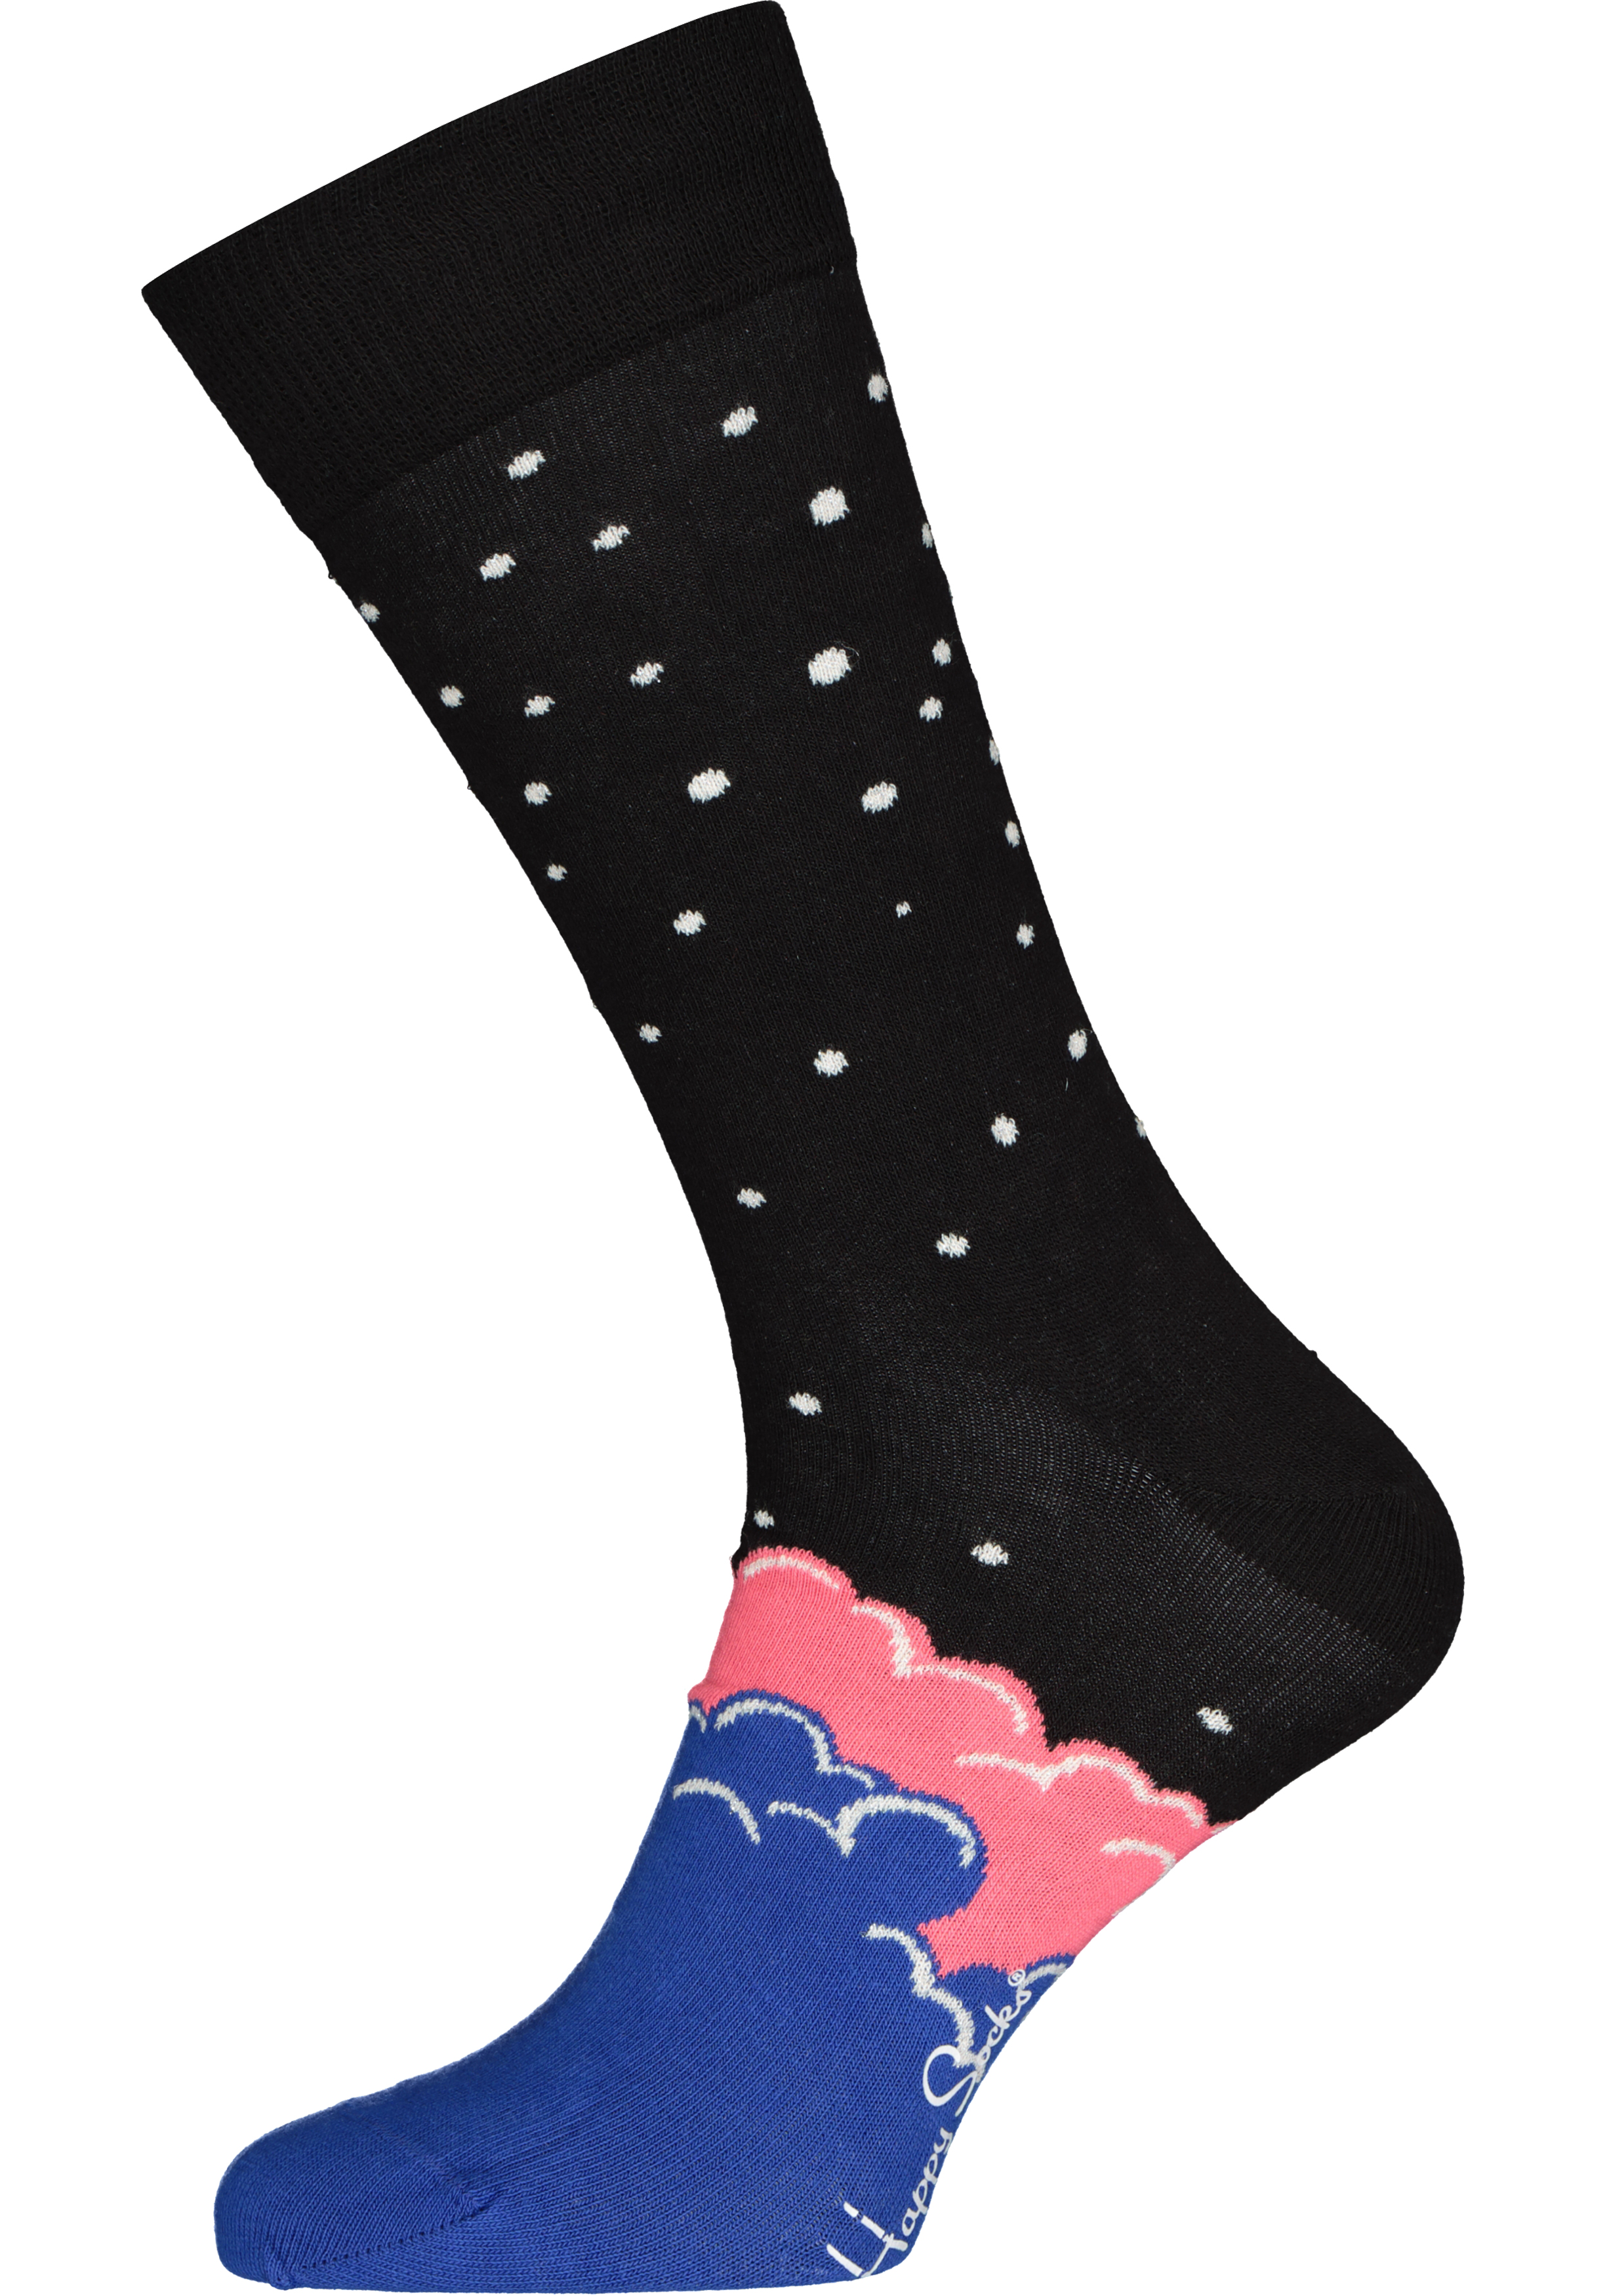 Happy Socks Over The Cloud Sock, roze en kobalt met zwart